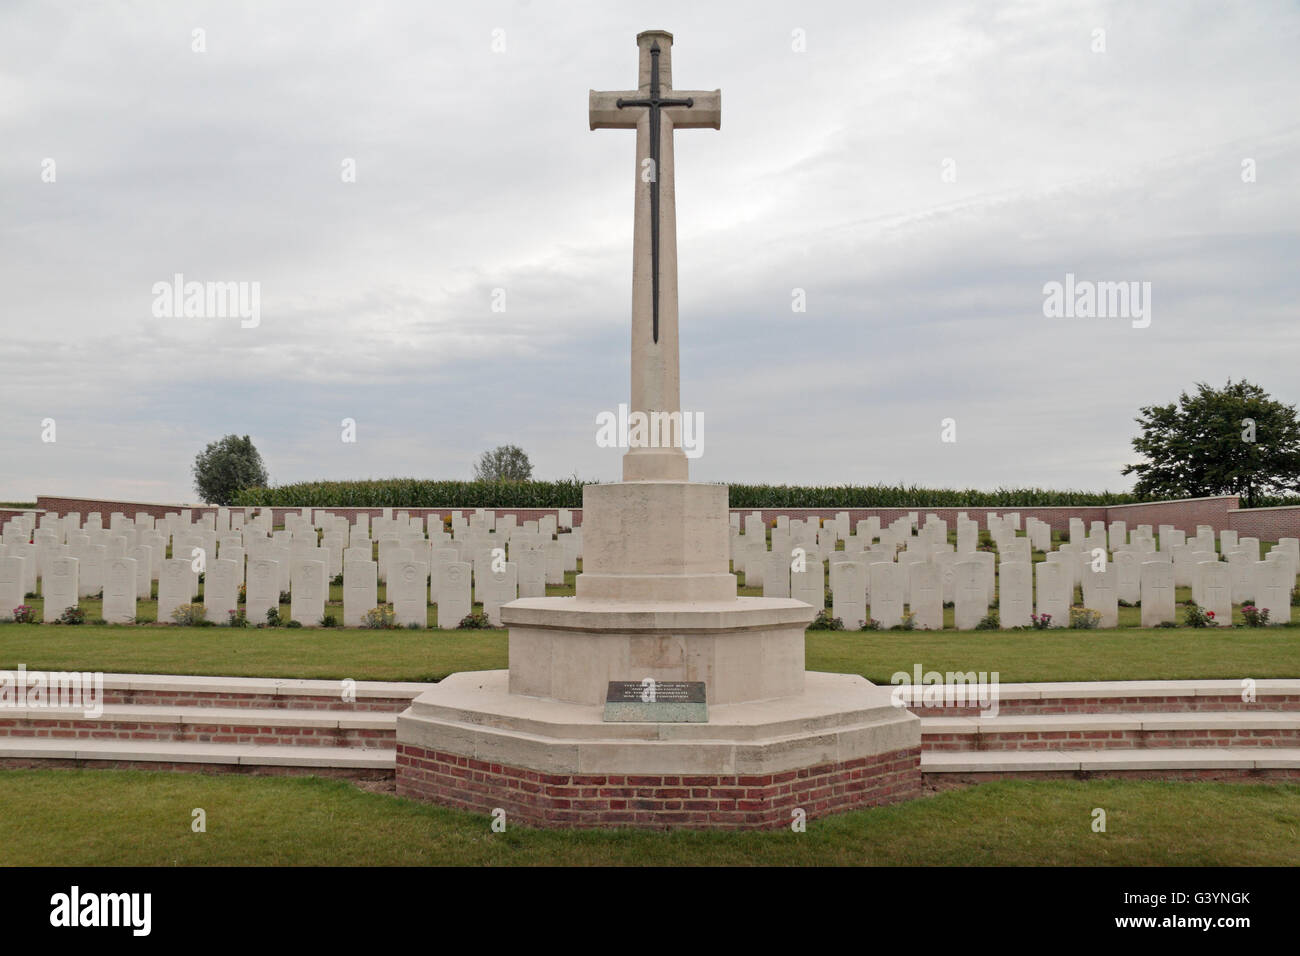 Cross of Sacrifice and headstones in the CWGC Kemmel No 1 French Cemetery, Poperingestraat, West-Vlaanderen, Belgium. Stock Photo